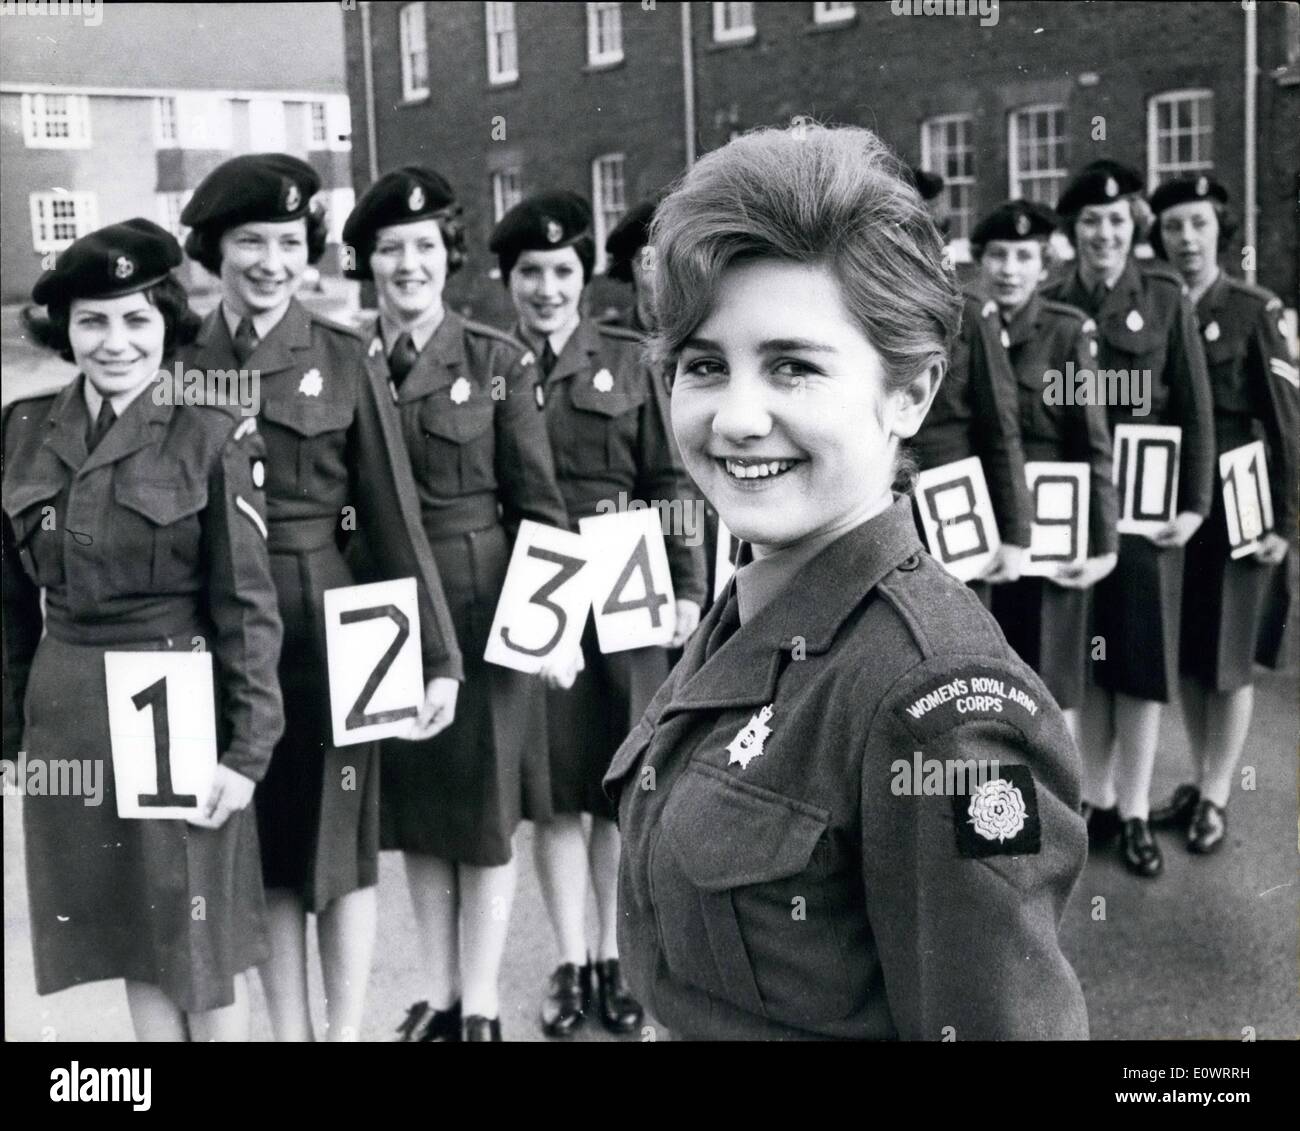 Febbraio 02, 1964 - ''Pin-Up'' privato. 17-anno-vecchio privato 417988 Shephard M. delle donne del Royal Army Corps ha ricevuto una promozione esclusiva, ella è diventata ''Esercito Pin-Up ragazza No.1" ufficiale, quando ha vinto un esercito concorso di bellezza da 10 altri contendenti che è stato scelto come la più bella delle bambine soldato nello Yorkshire. Il concorso è stato organizzato dalla W.R.A.C. dopo che ha visto il pin-up le foto sulle pareti di un uomo caserma, hanno deciso che era il momento di l'immagine pubblica dell'W.R.A Foto Stock